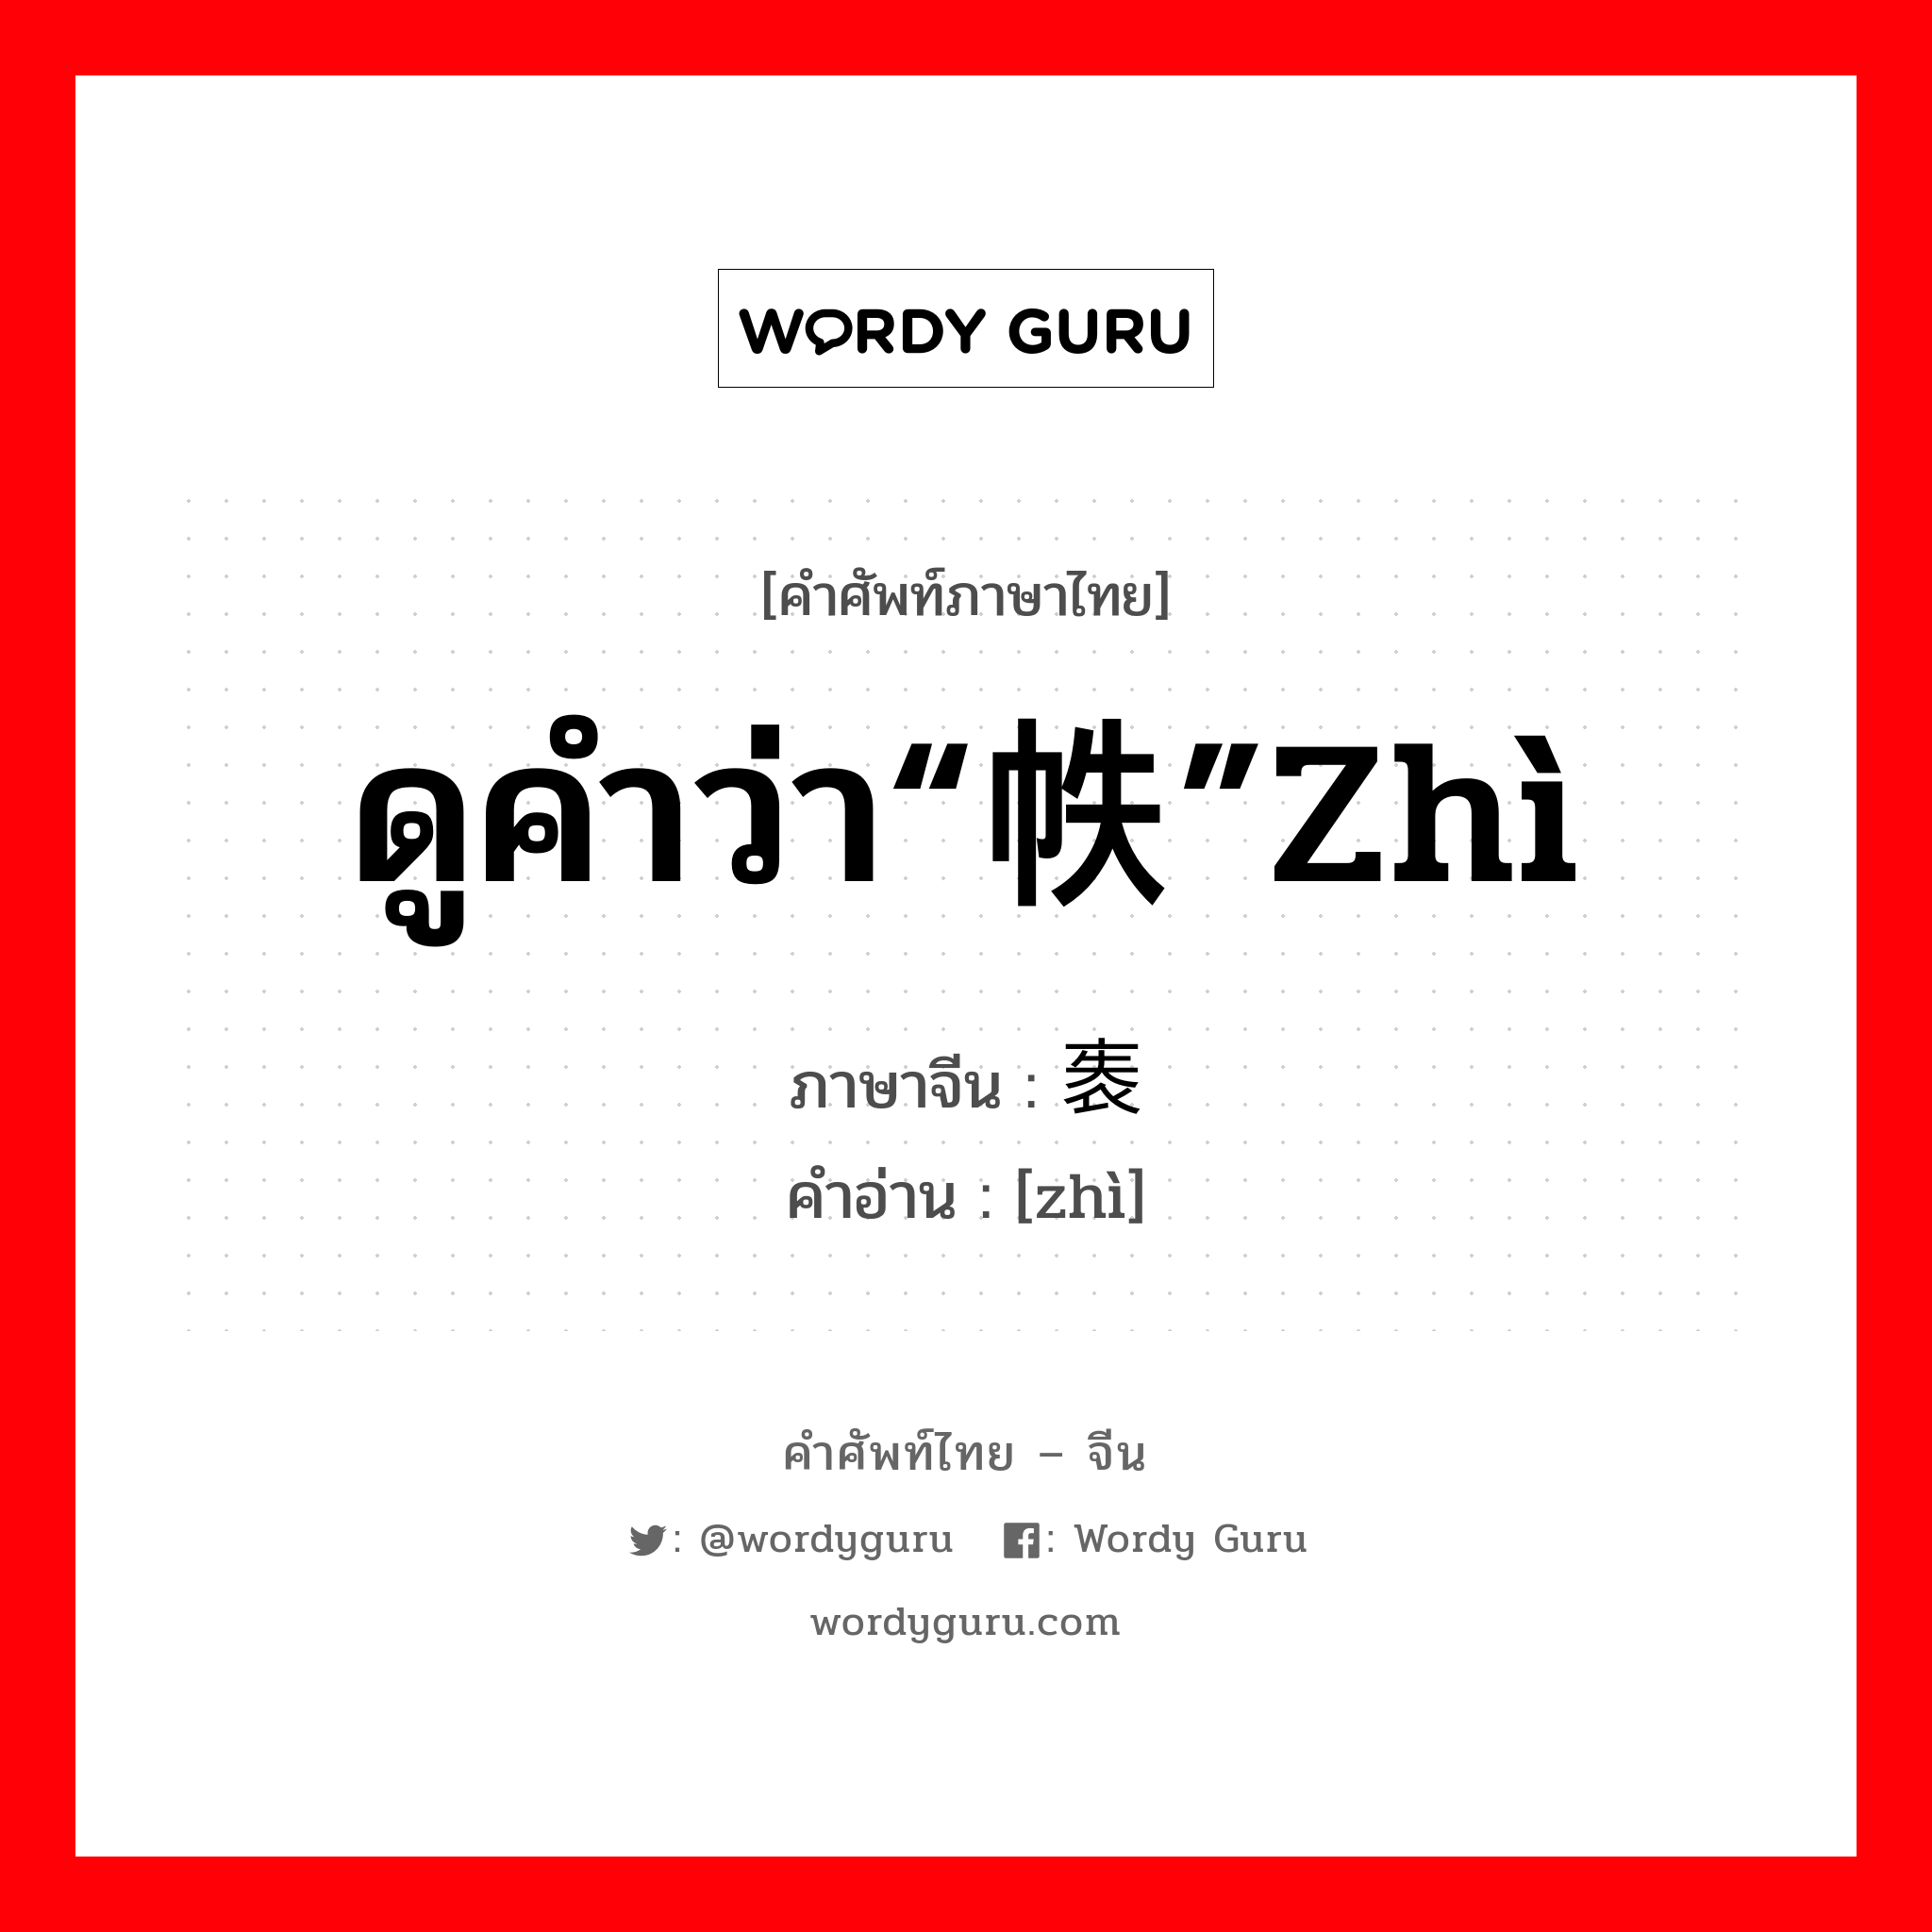 ดูคำว่า“帙”zhì ภาษาจีนคืออะไร, คำศัพท์ภาษาไทย - จีน ดูคำว่า“帙”zhì ภาษาจีน 袠 คำอ่าน [zhì]